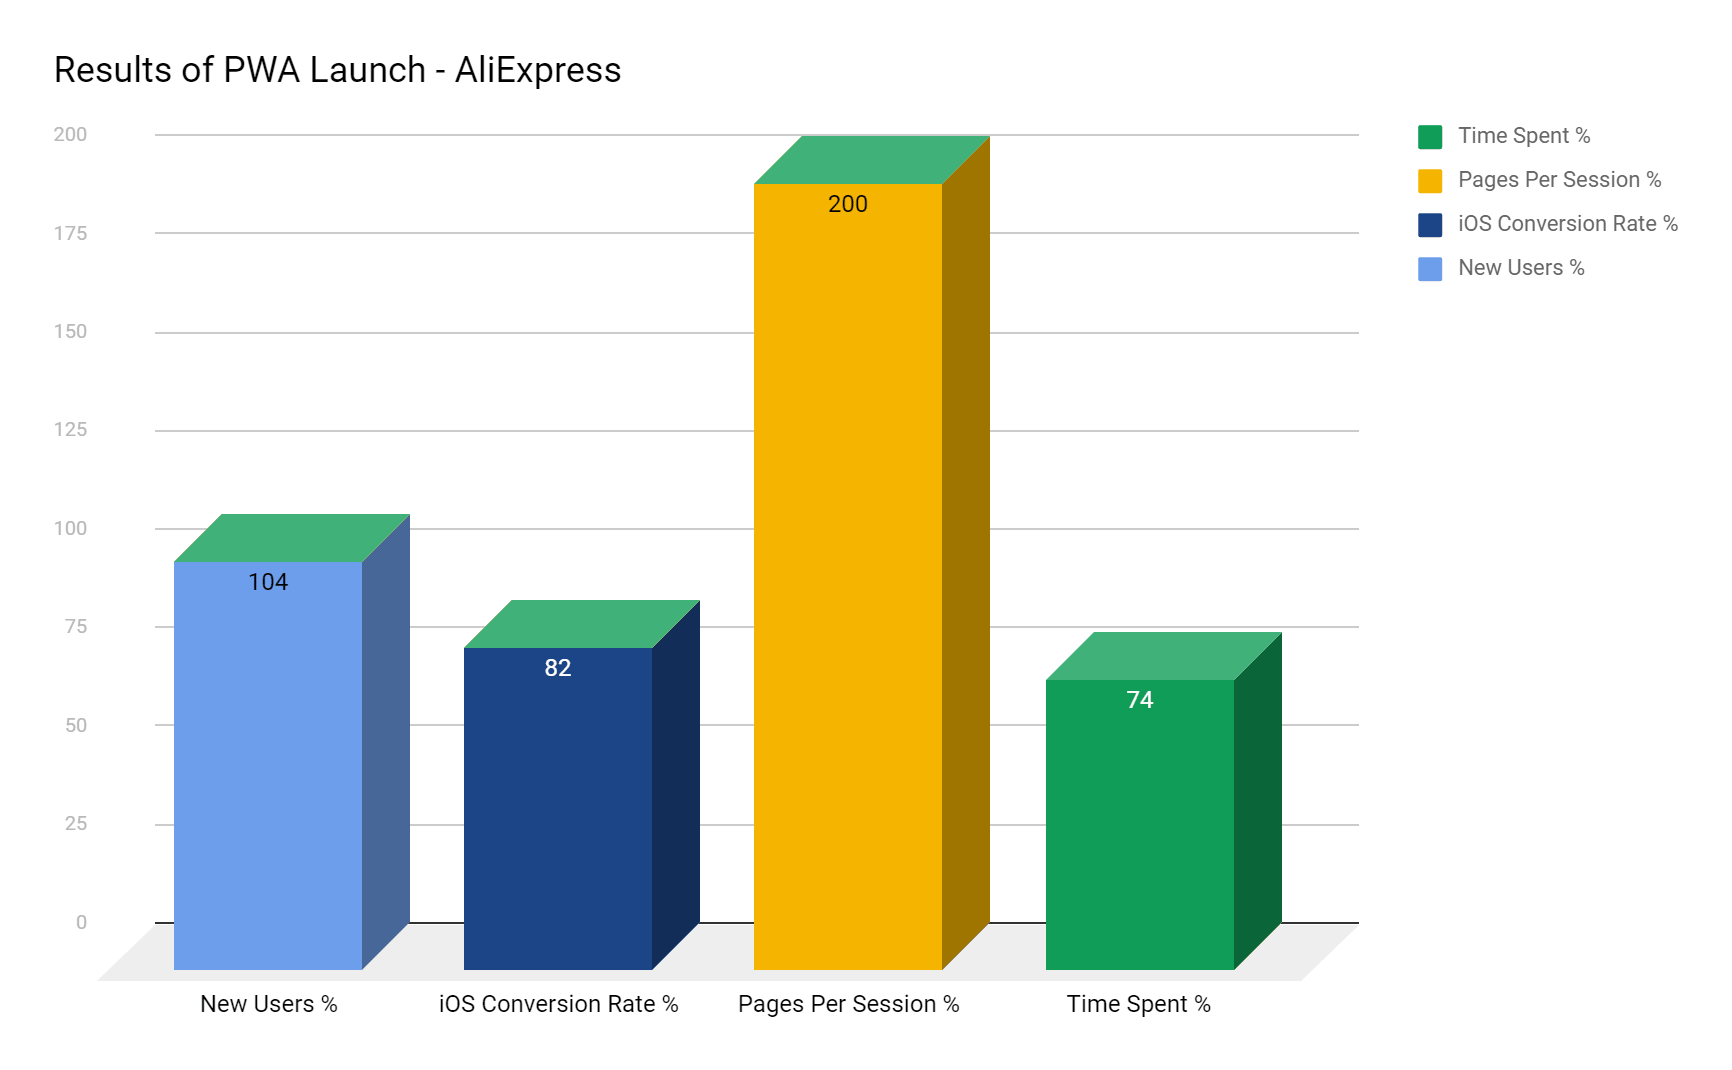 Results of pwa launch - aliexpress